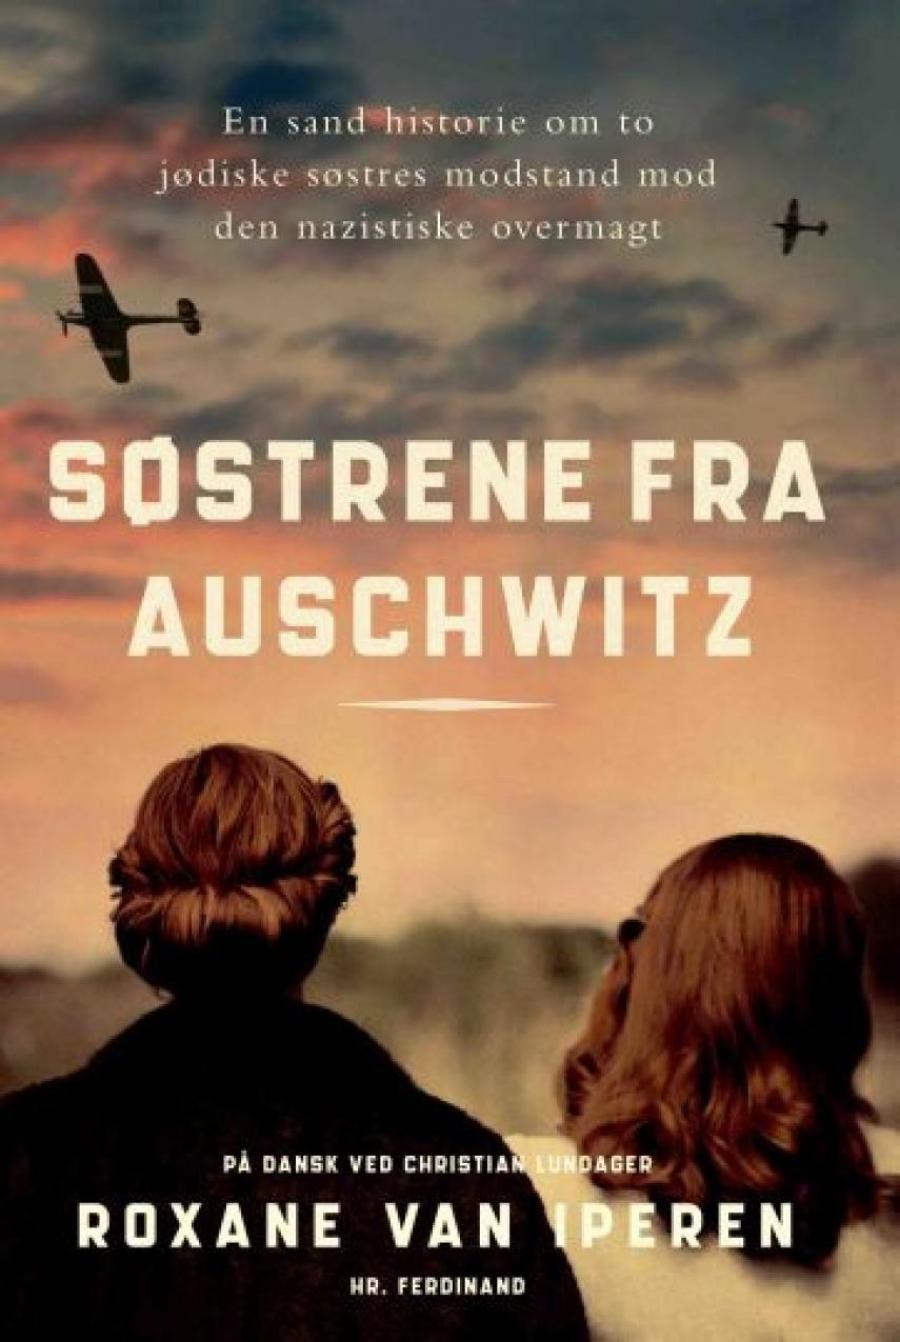 Søstrene fra Auschwitz: en sand historie om to jødiske søstres modstand mod den nazistiske overmagt